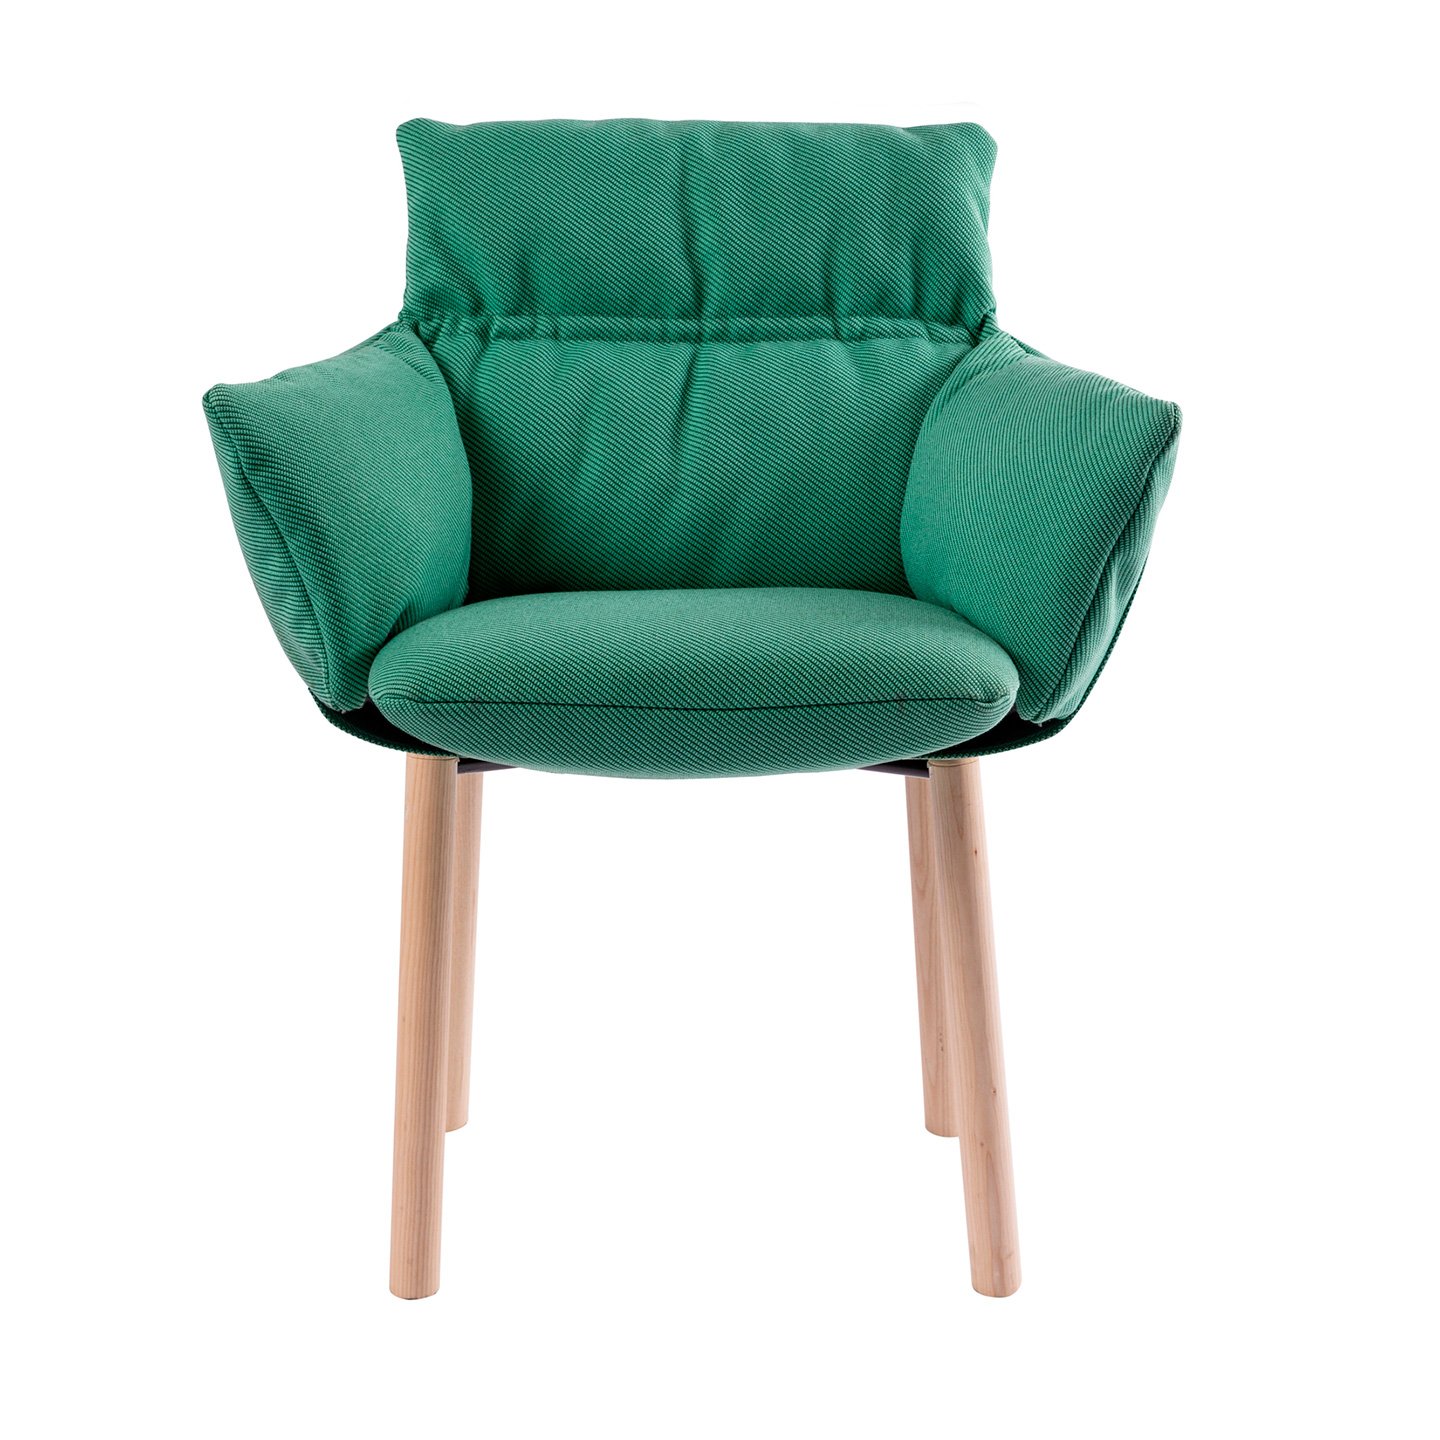 Der Lud'ina ist der ideale Stuhl für das Büro, Homeoffice oder Esszimmer.